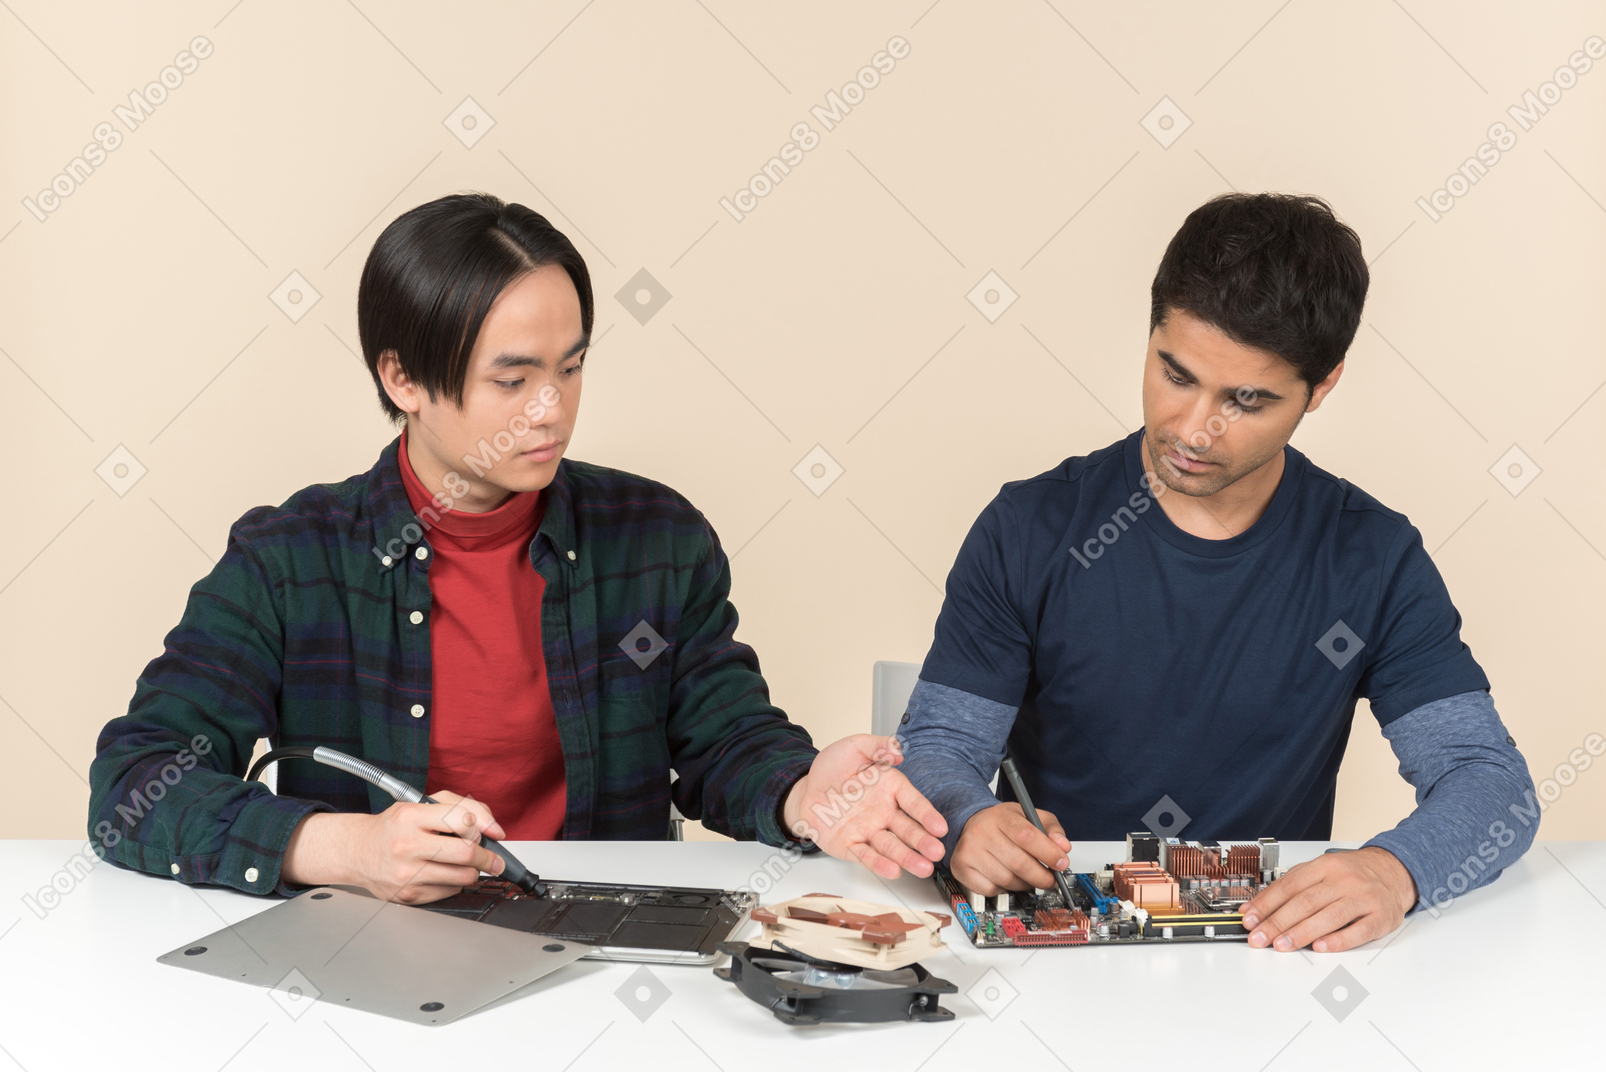 Zwei junge geeks mit einigen details auf dem tisch, die einige probleme haben